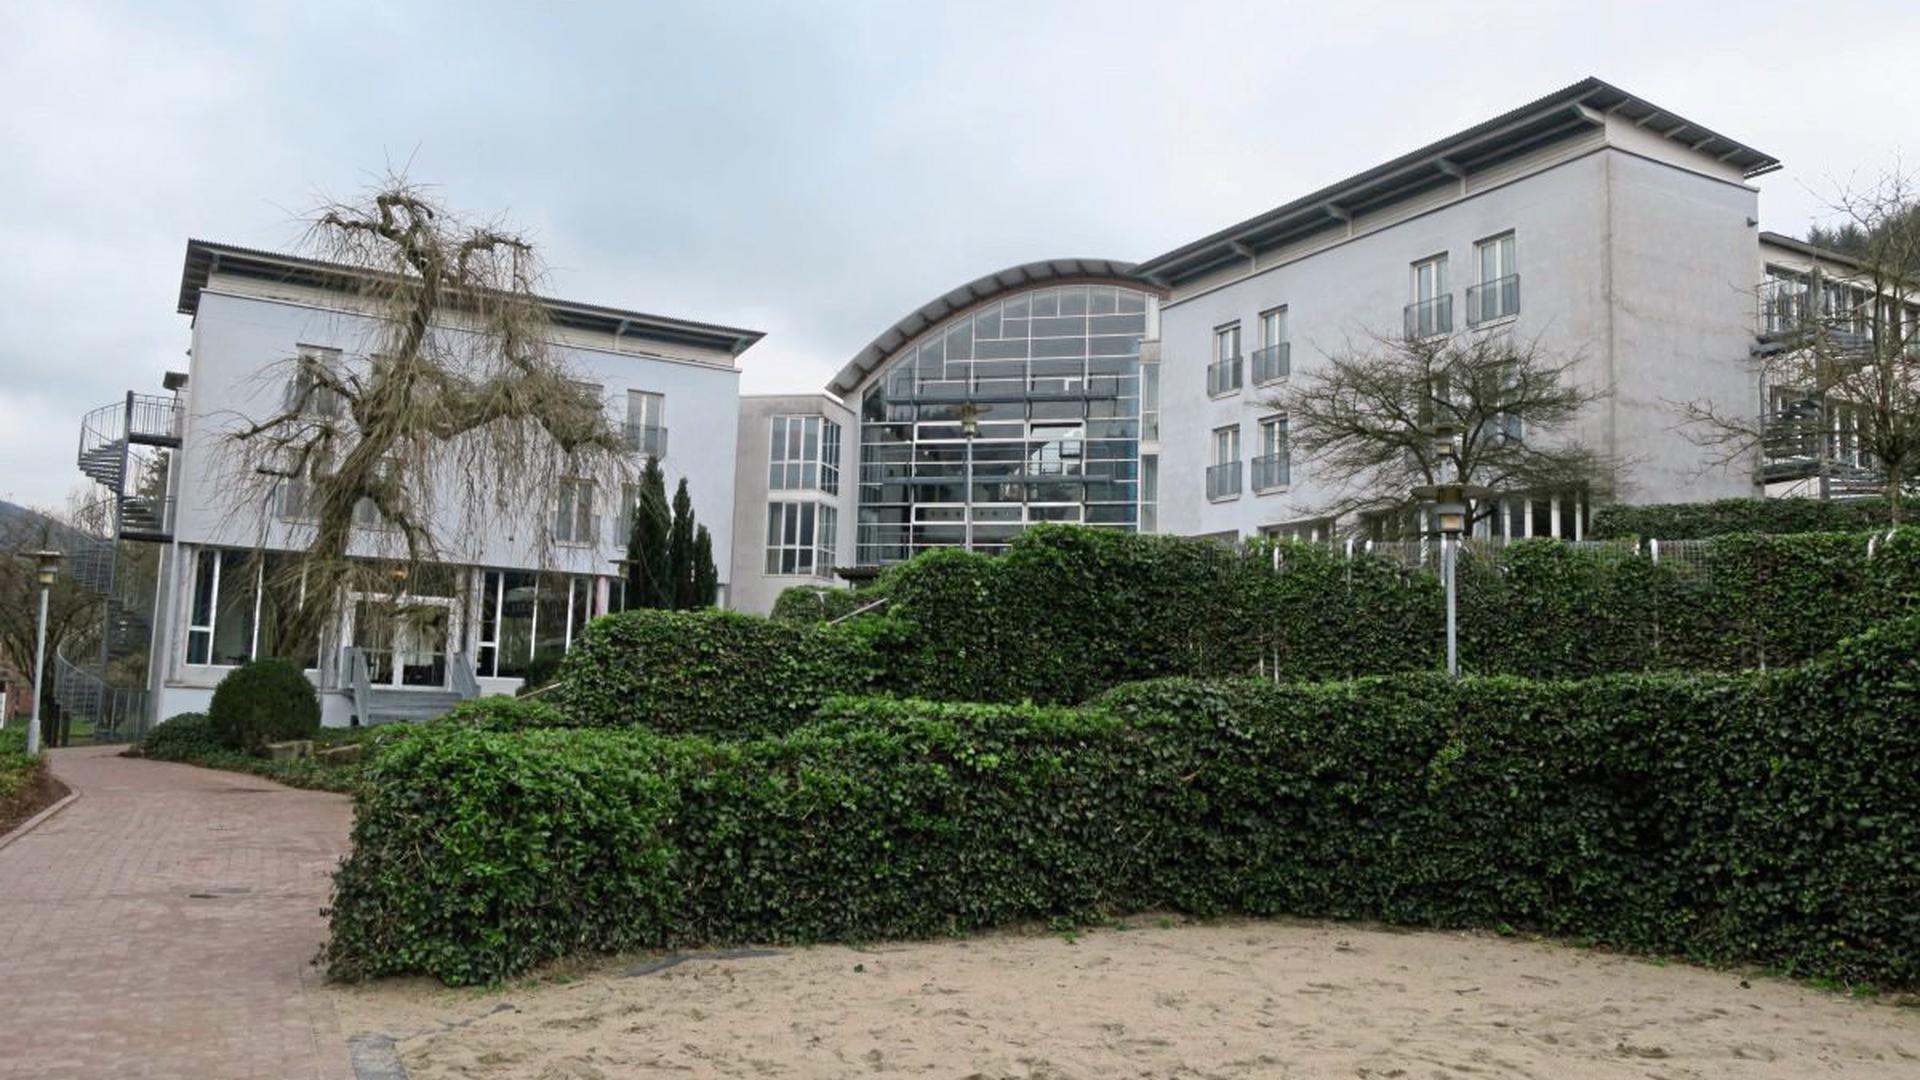 Das heutige Internat in Neckargemünd ist ein modernes Gebäude aus dem Jahr 1991.